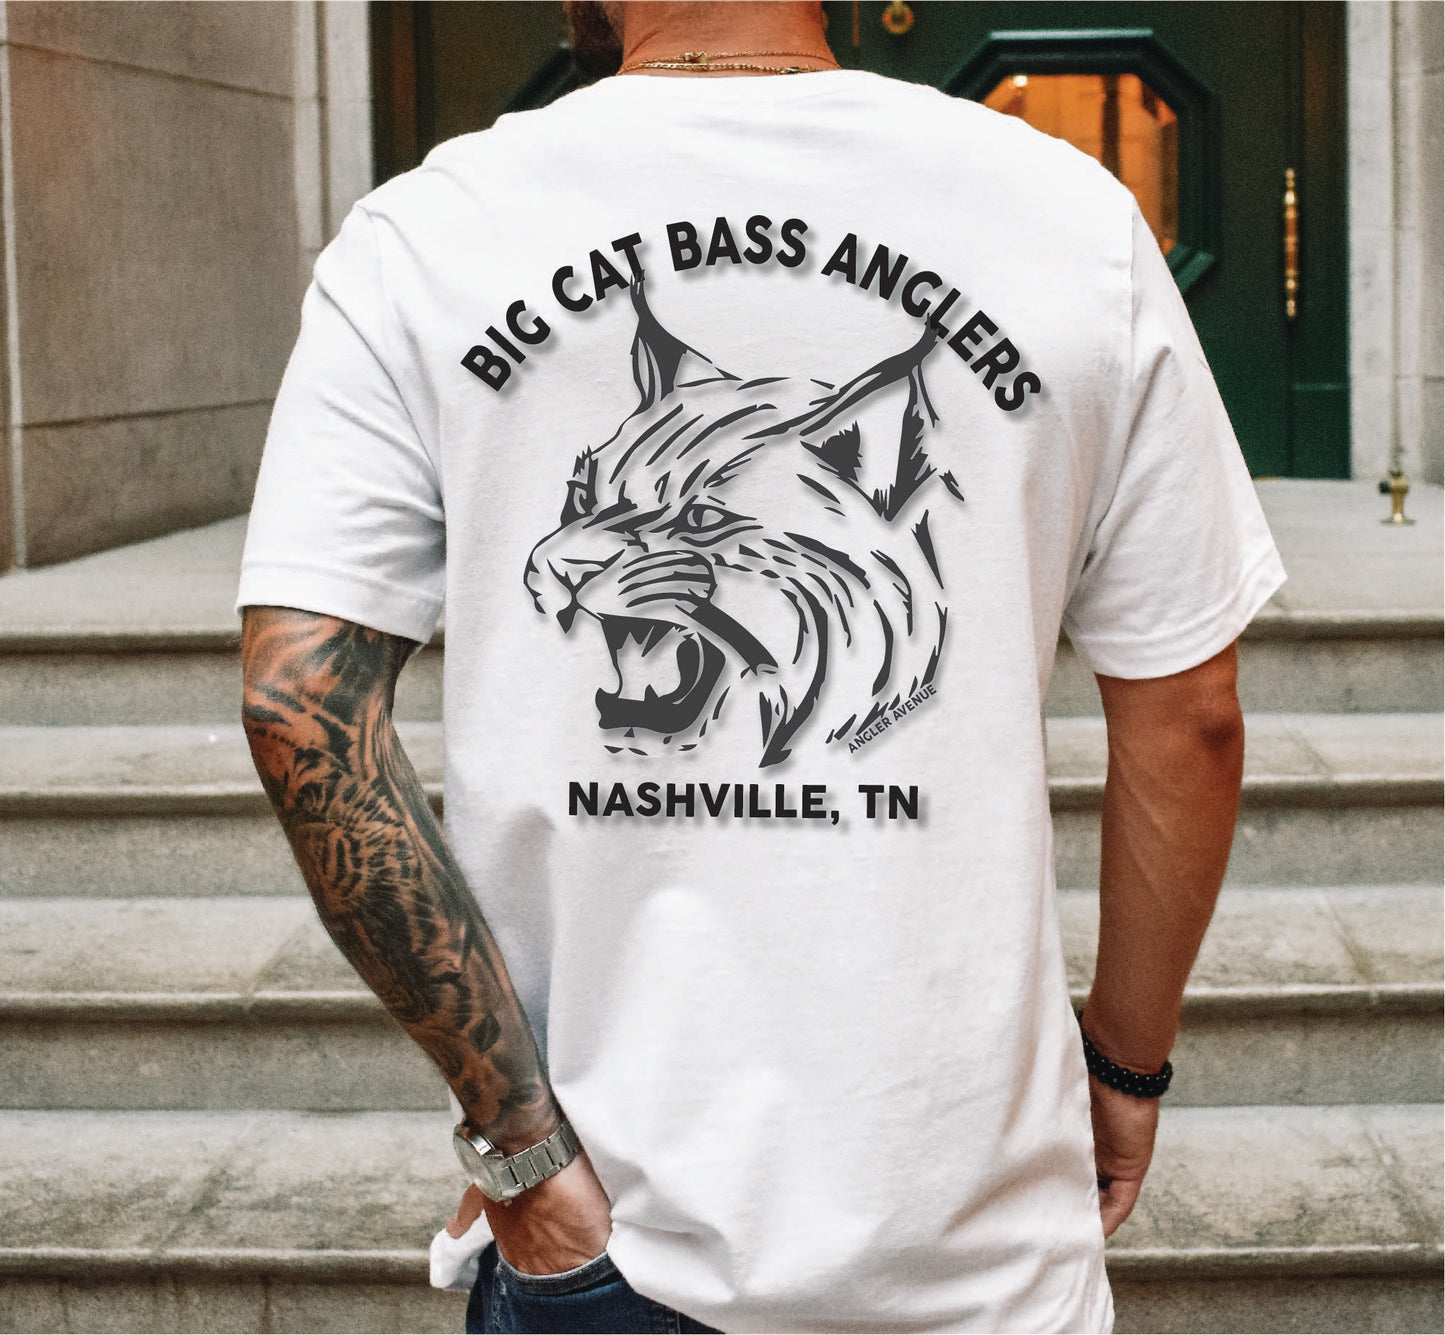 Big Cat Bass Anglers T-Shirt